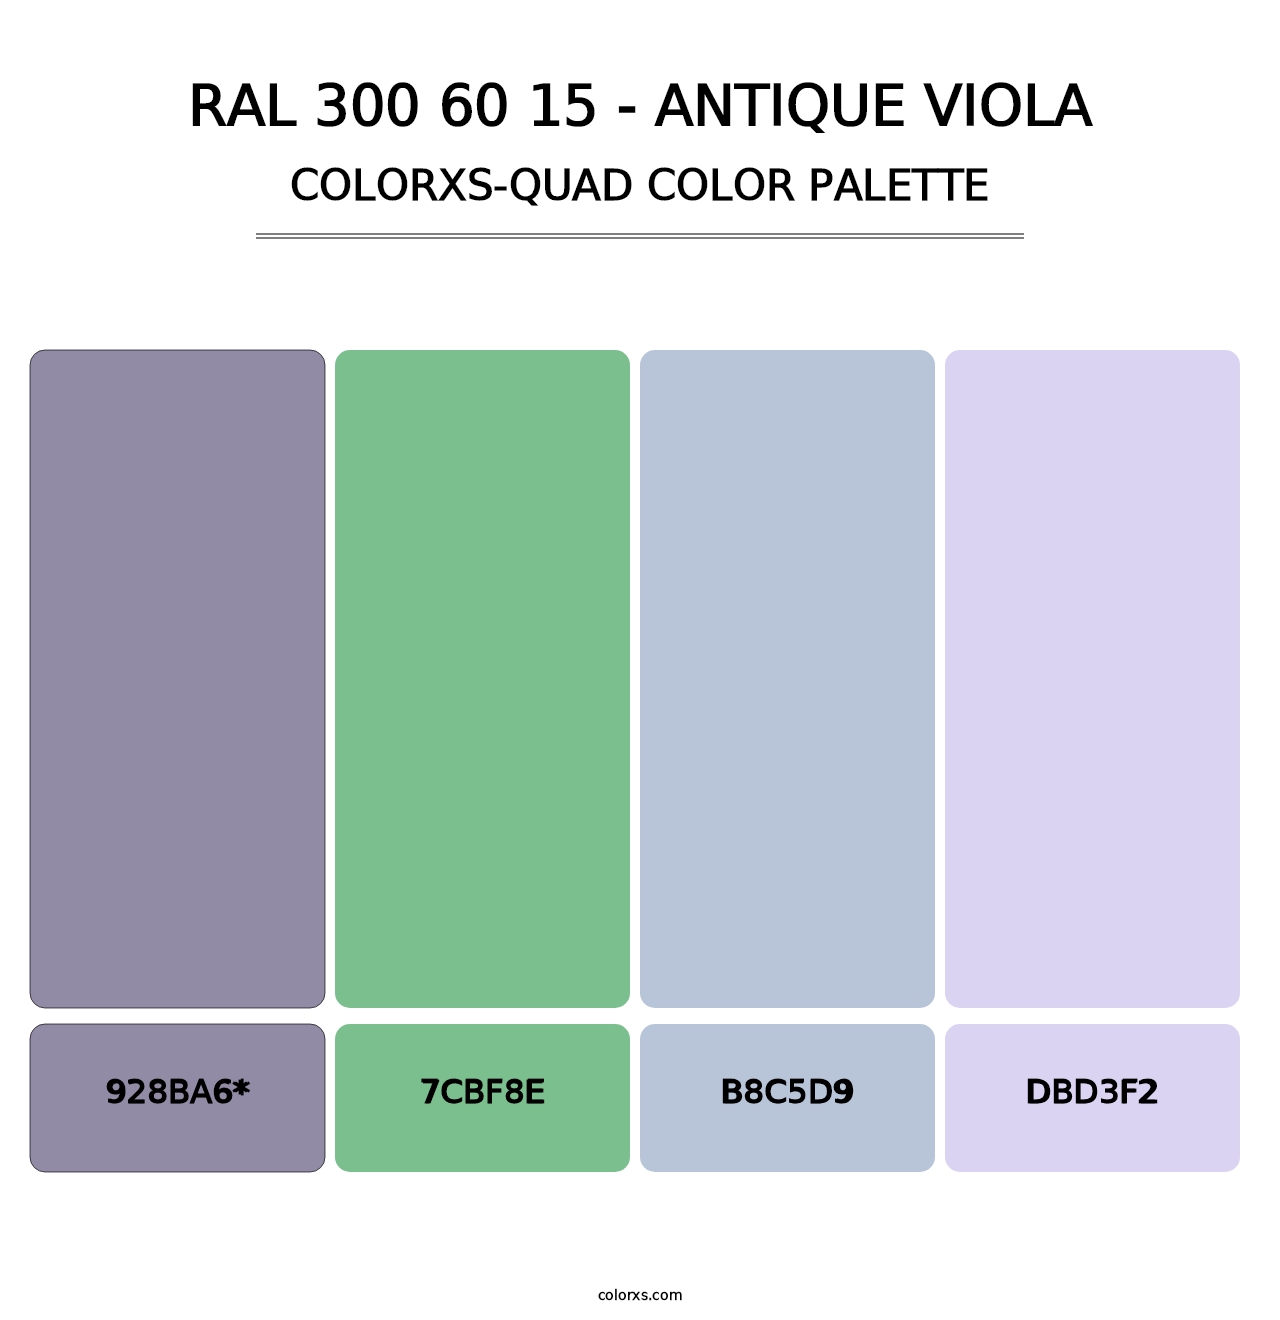 RAL 300 60 15 - Antique Viola - Colorxs Quad Palette